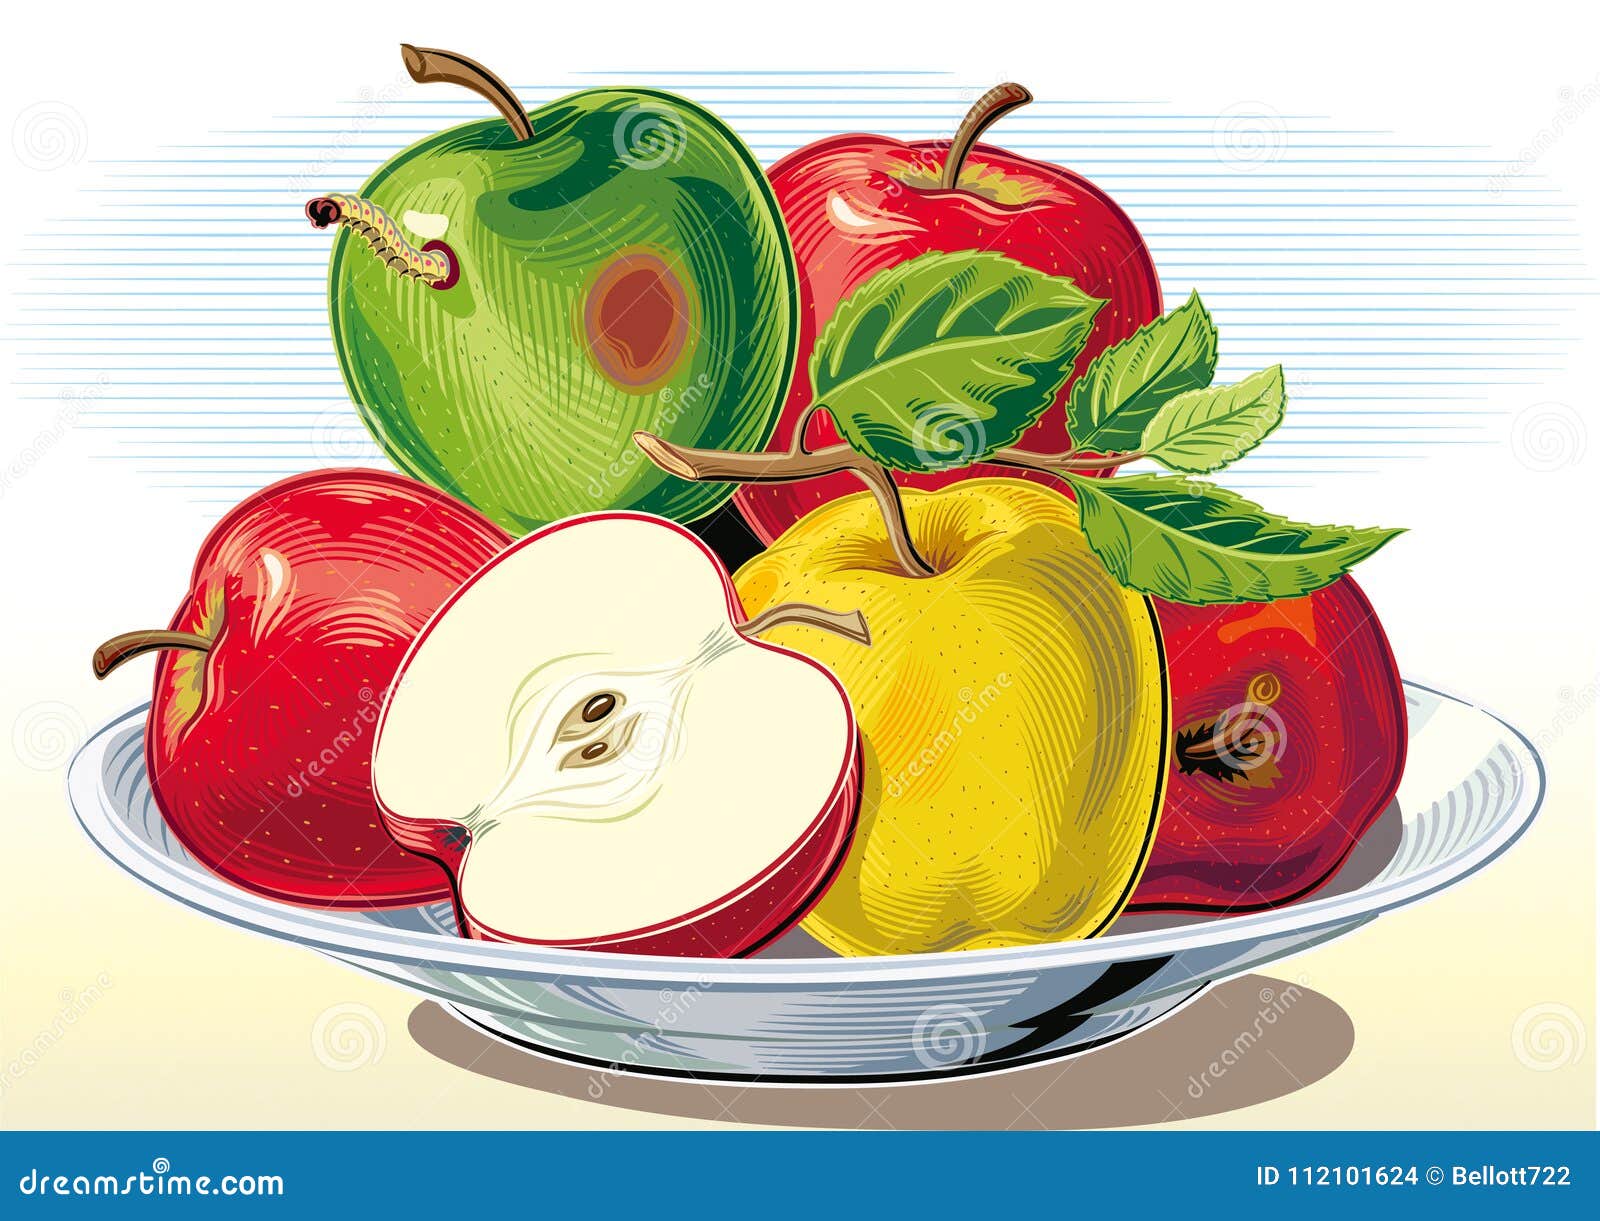 Яблочко на тарелочке рисование